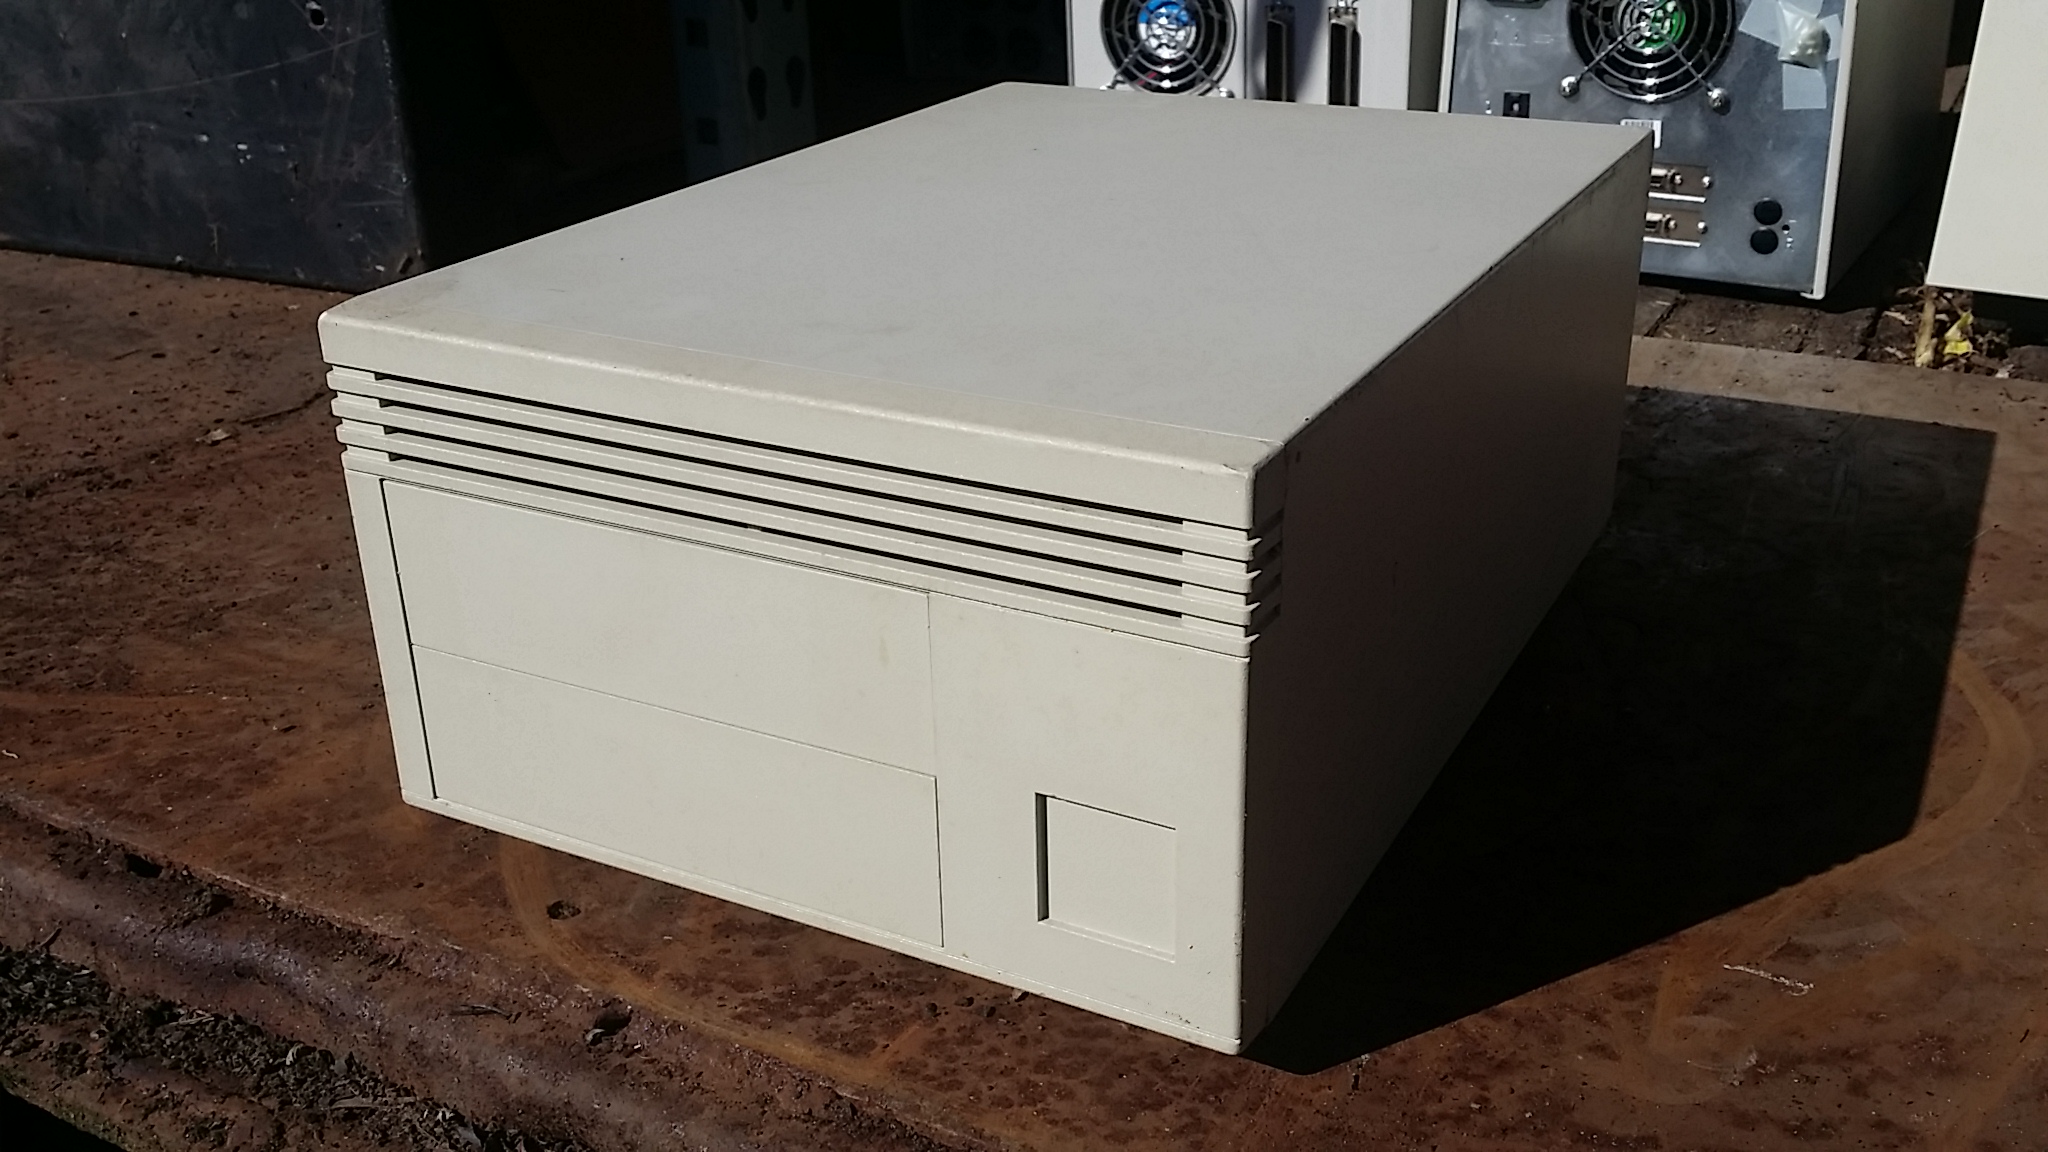 External 5 1/4" SCSI Disk Box